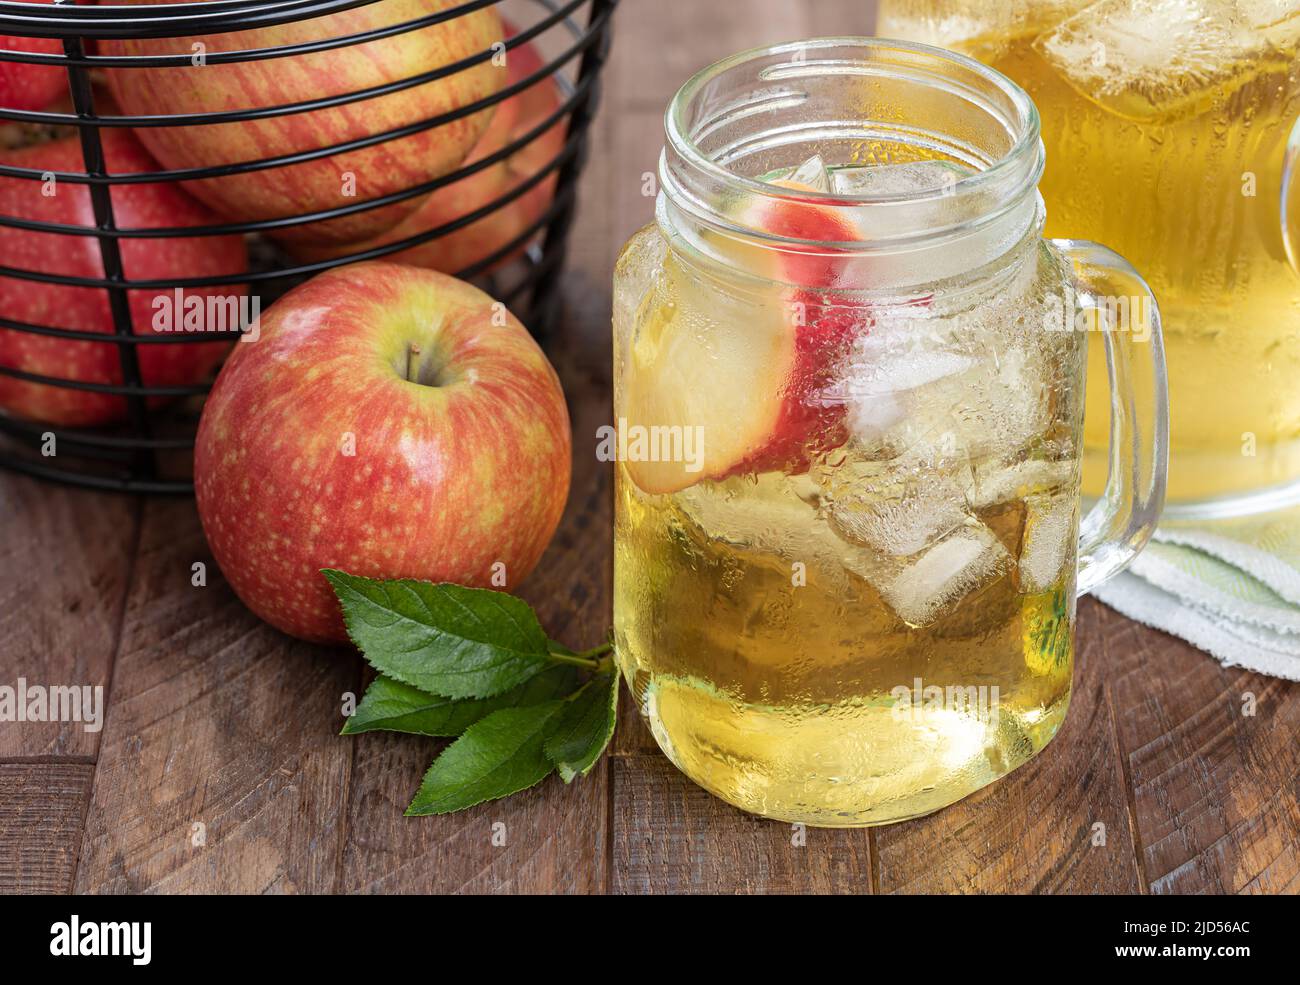 Vaso de jugo de manzana, rodaja de manzana y hielo con manzanas rojas de fressh sobre una mesa de madera Foto de stock